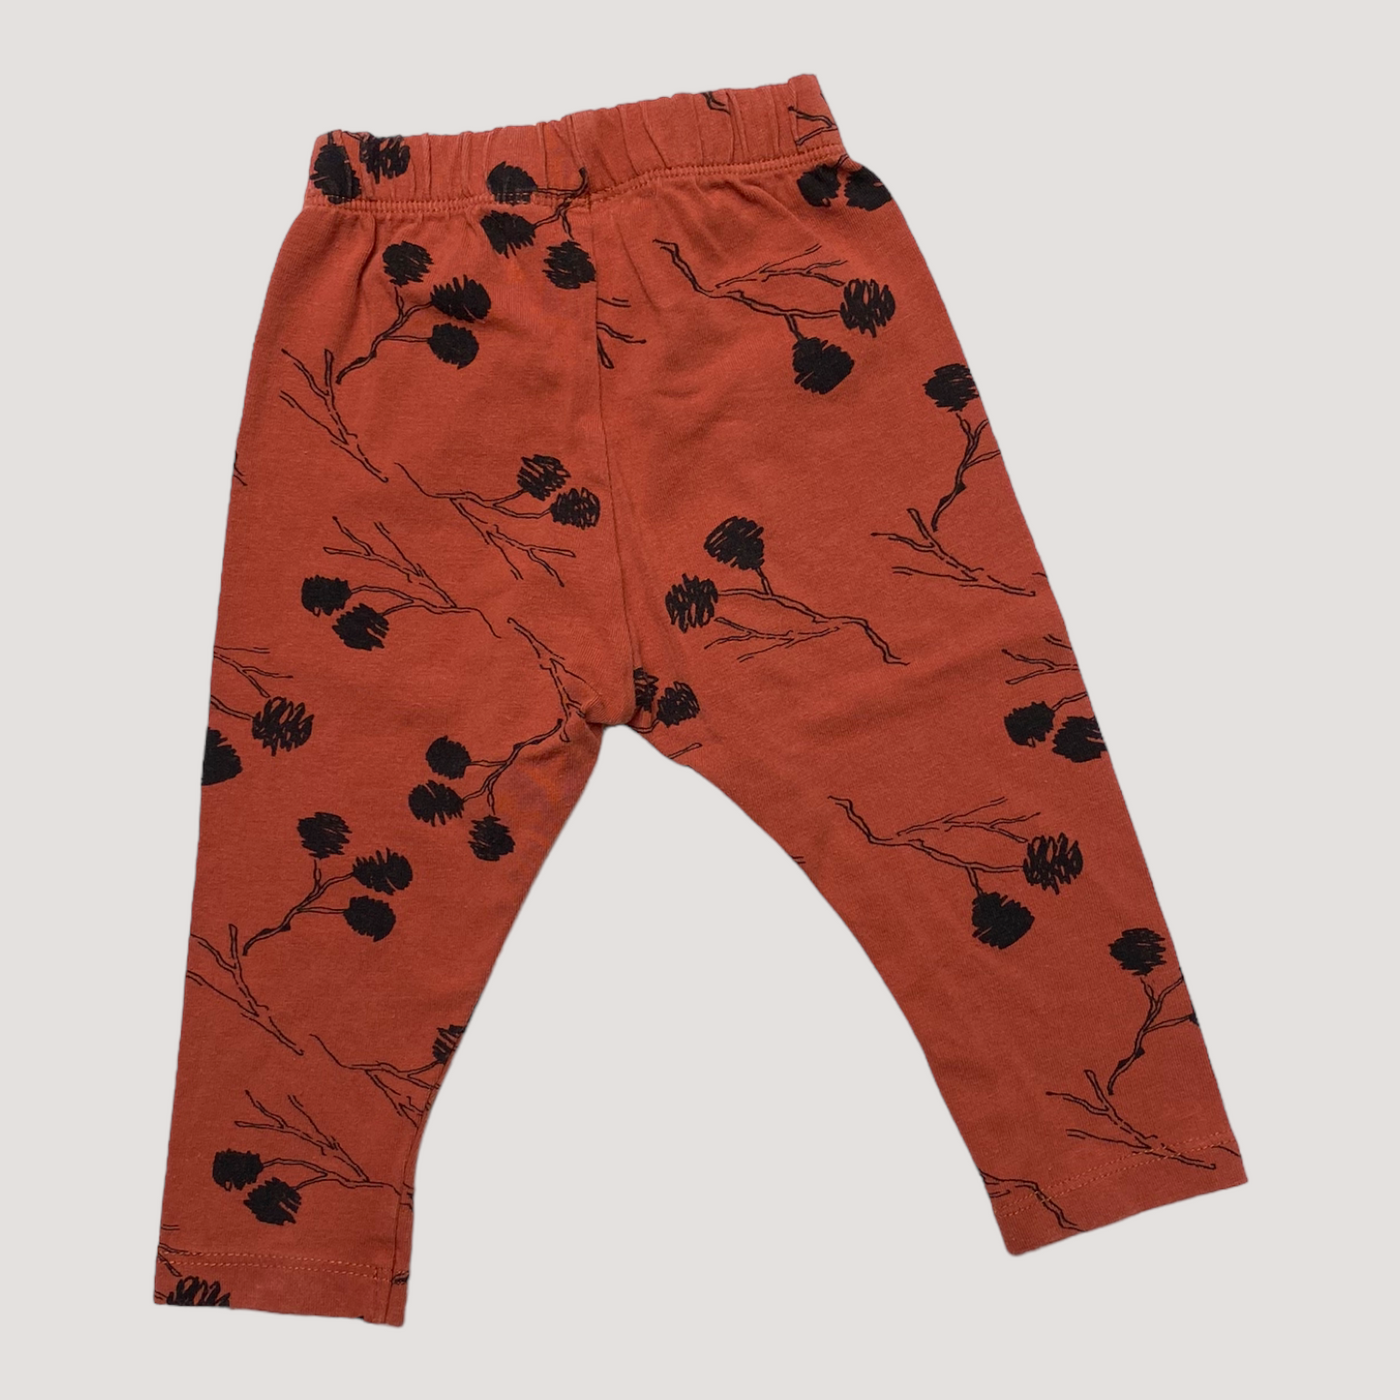 Mainio leggings, chili red | 62/68cm